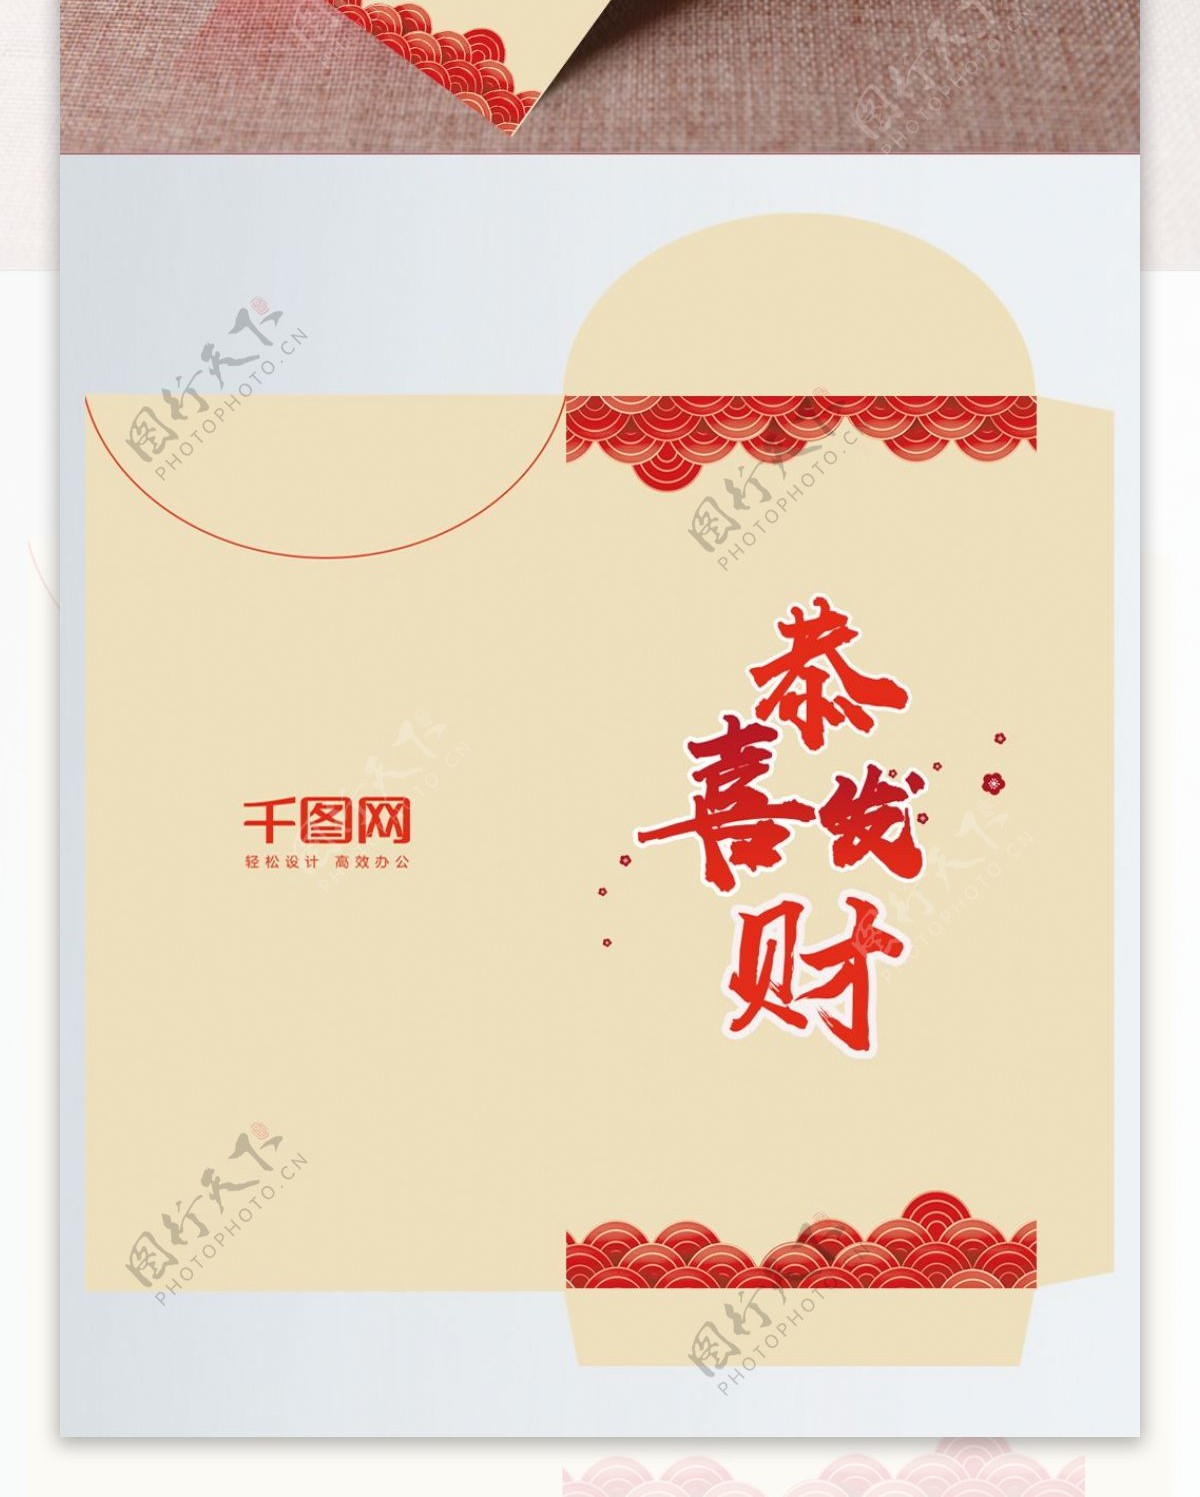 简约大气中国风新年红包设计模板